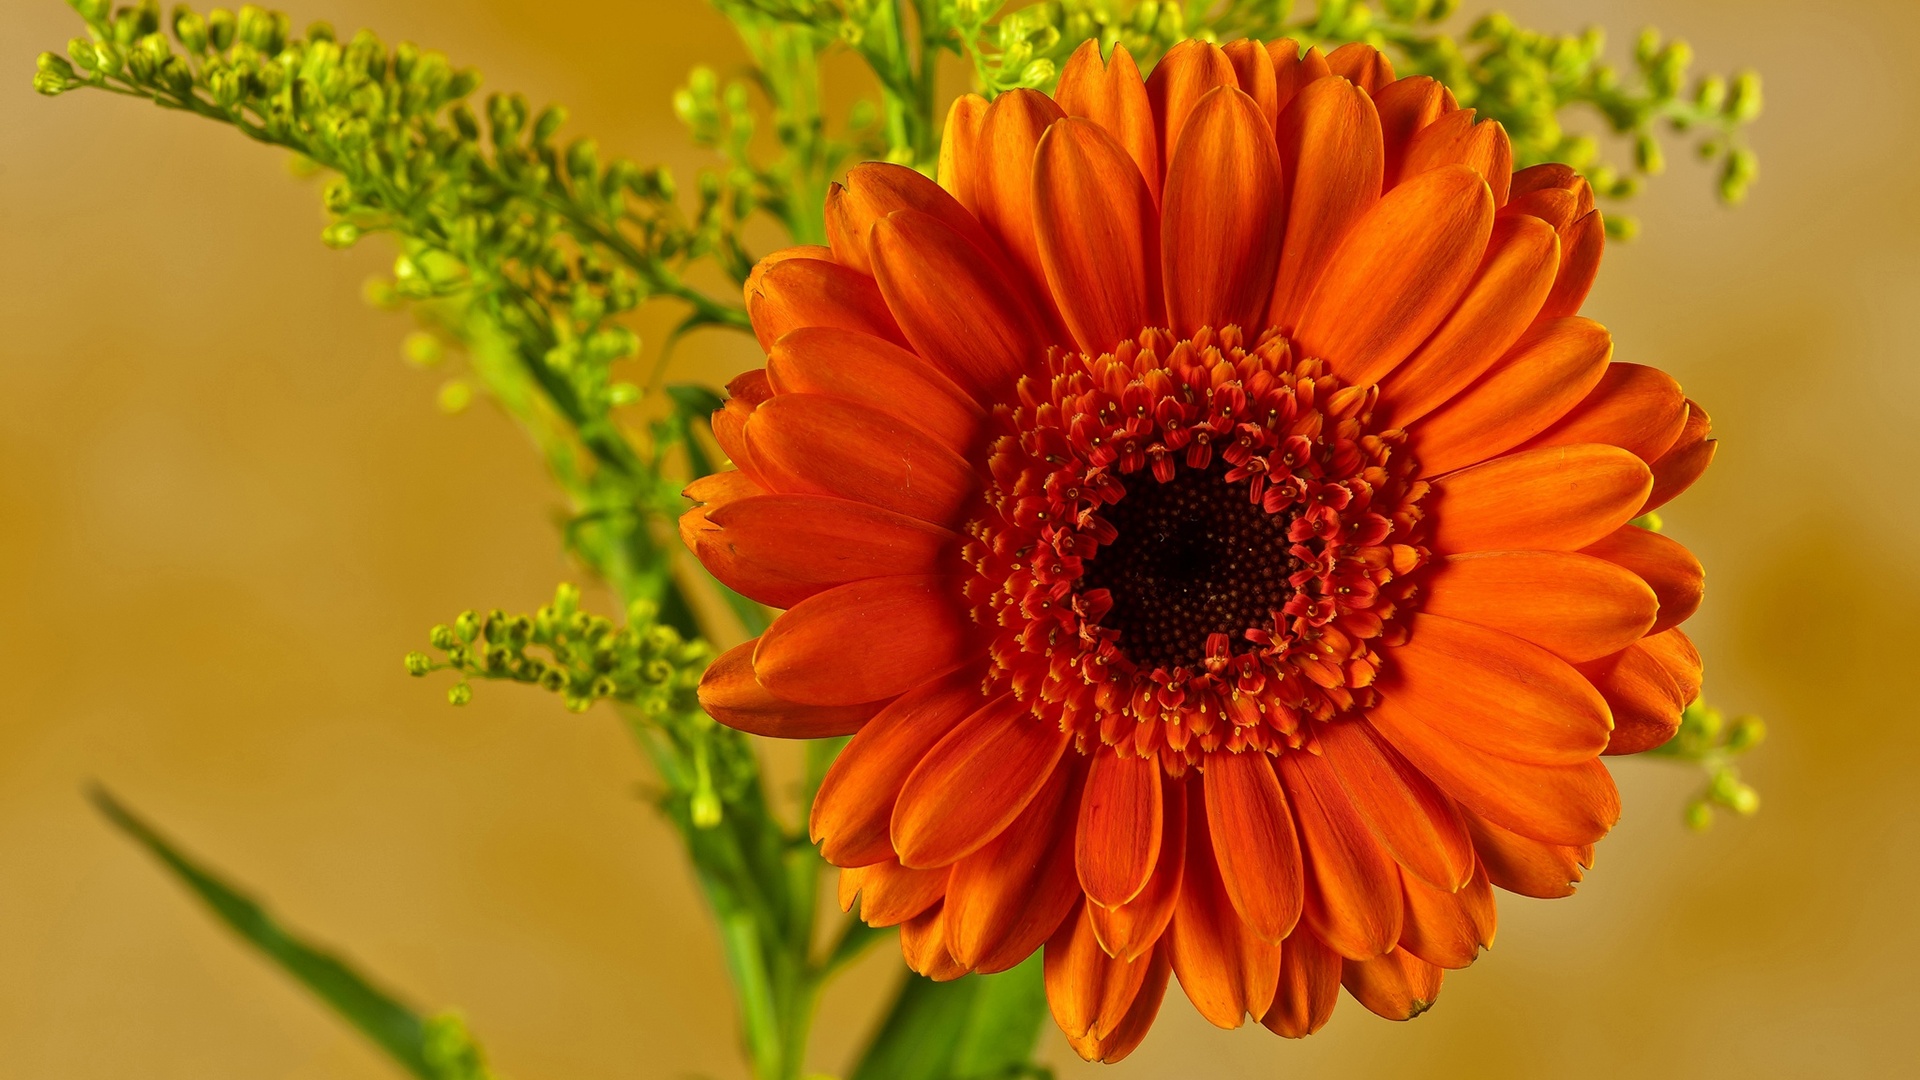 Скачать обои бесплатно Цветок, Гербера, Земля/природа, Оранжевый Цветок картинка на рабочий стол ПК